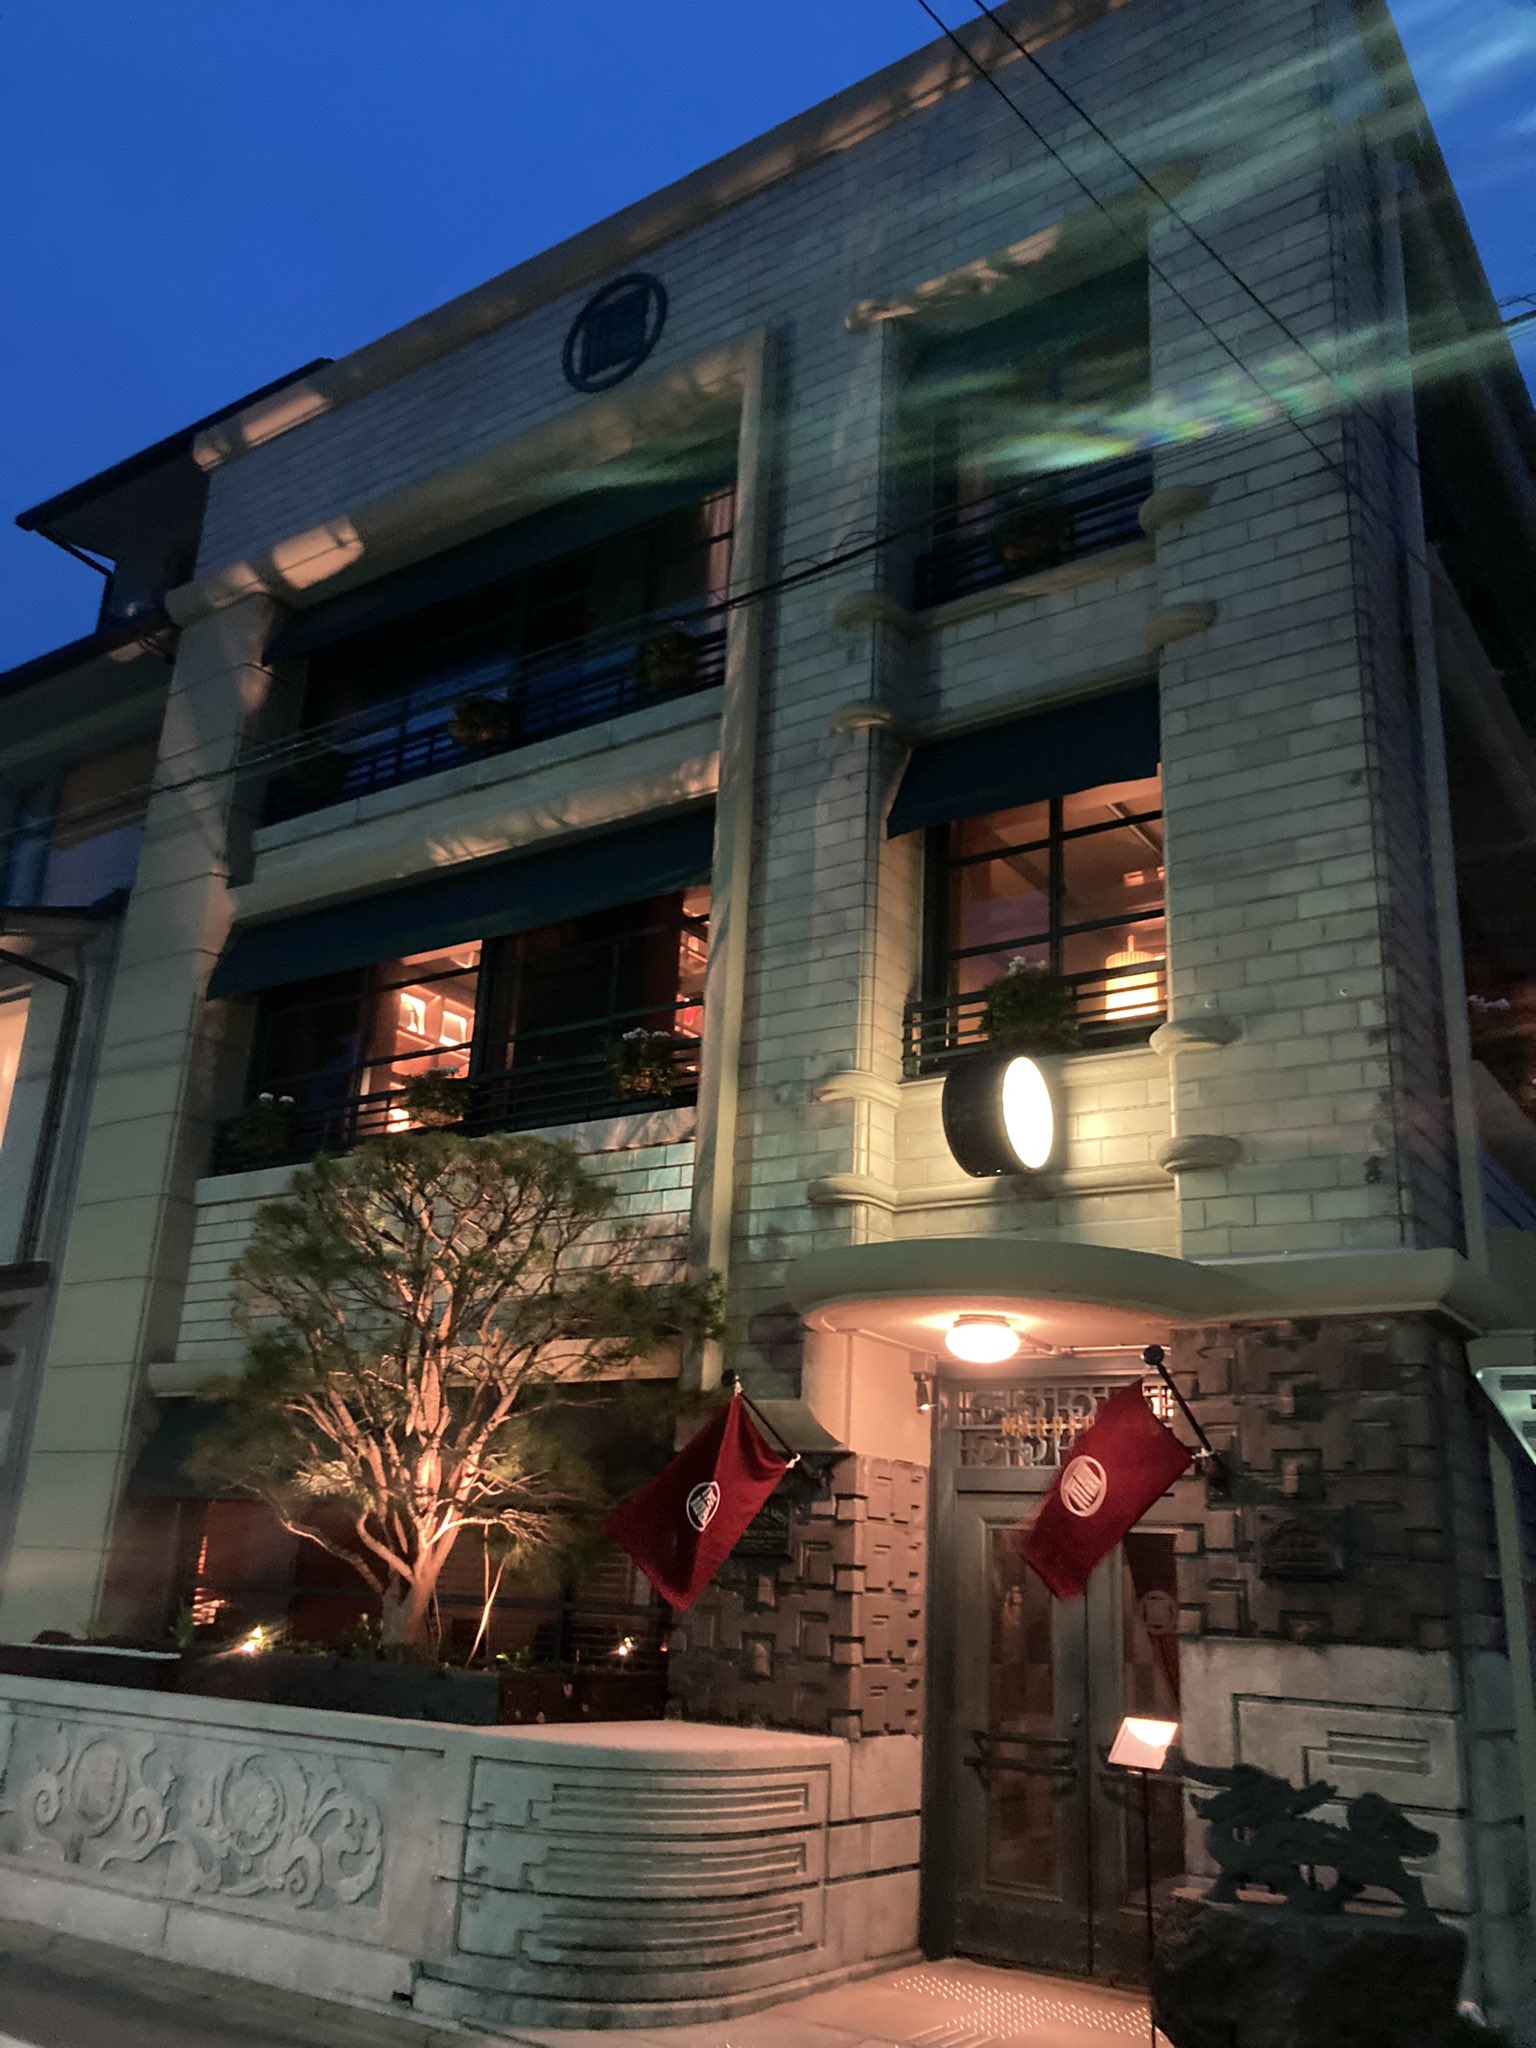 【主機遊戲】舊任天堂總部大樓改造酒店“丸福樓”4月1日開業